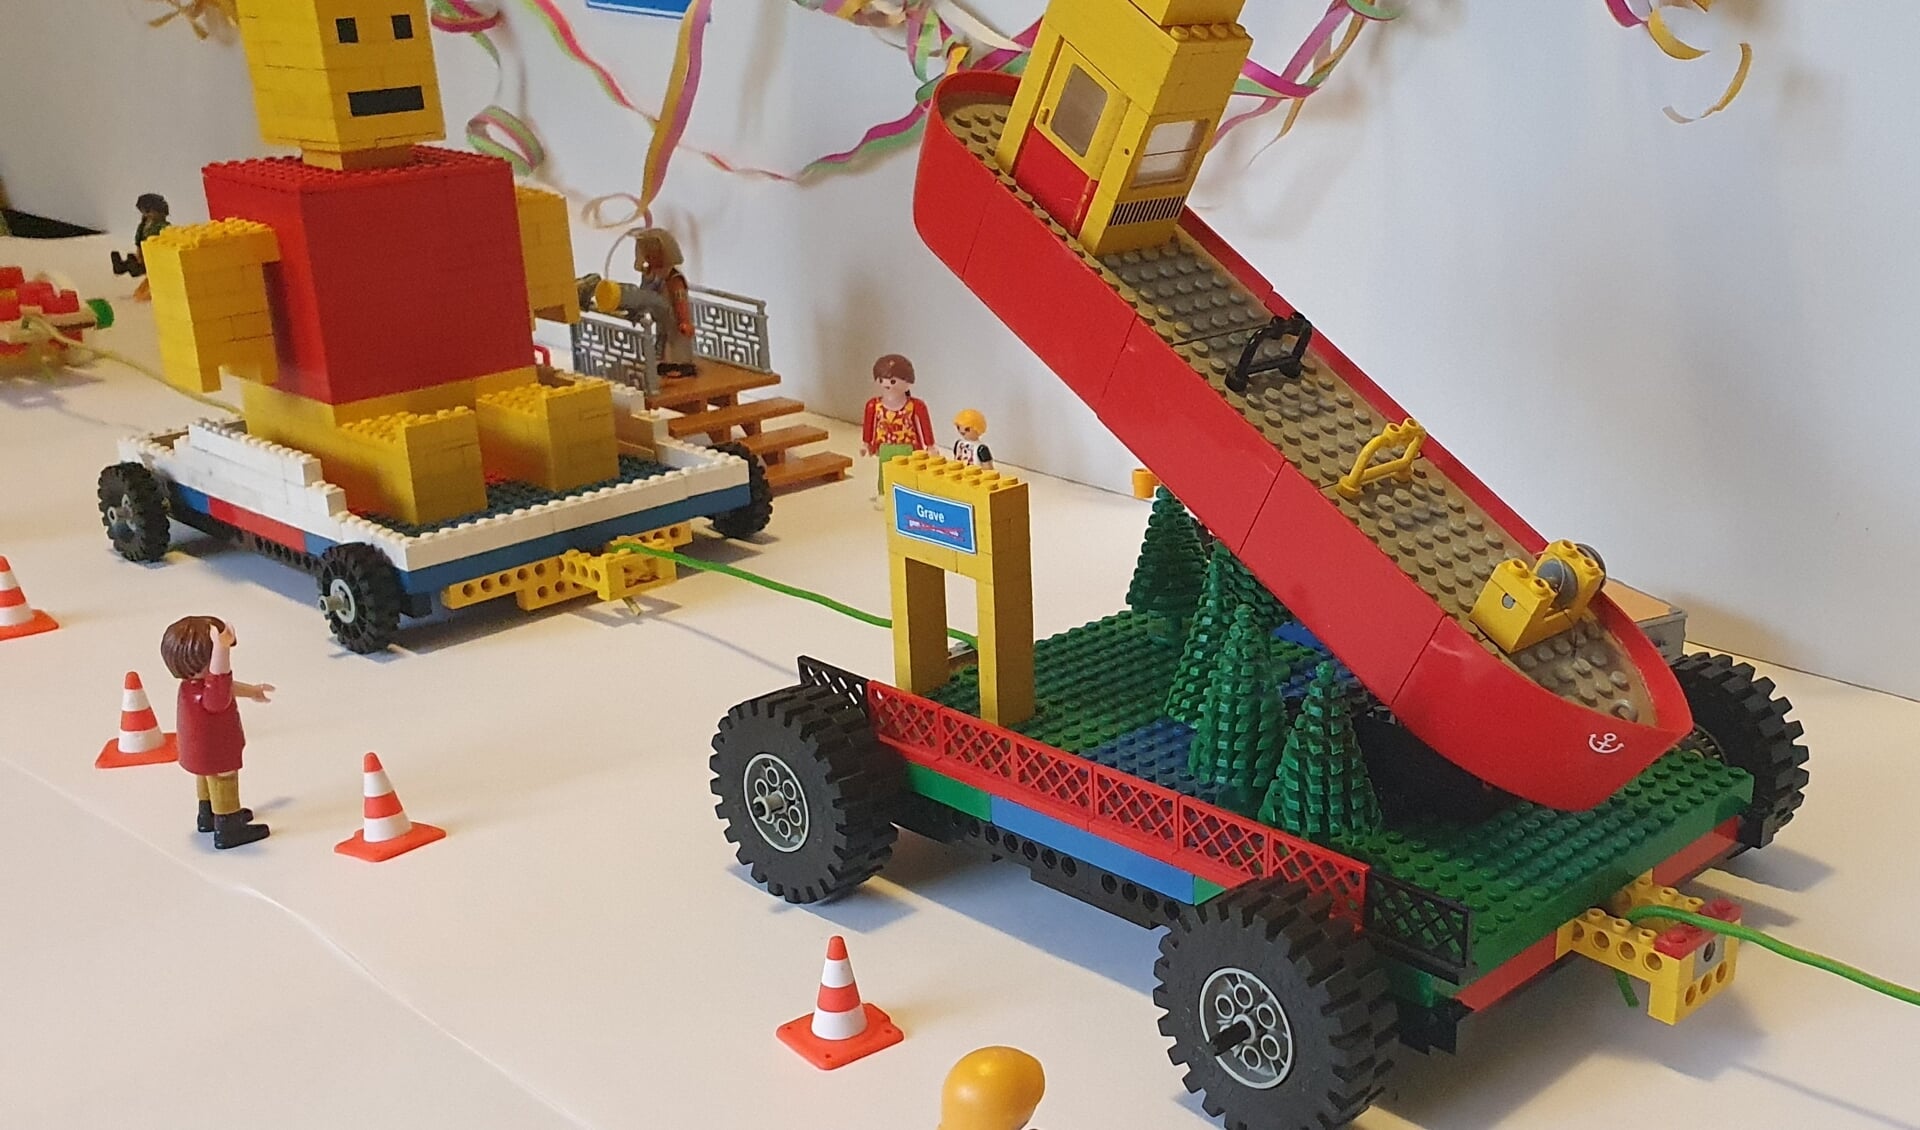 Met Playmobil, hout, Lego, papier maché, K’nex en andere materialen worden thuis de mooiste wagentjes gemaakt voor 't Optochtje